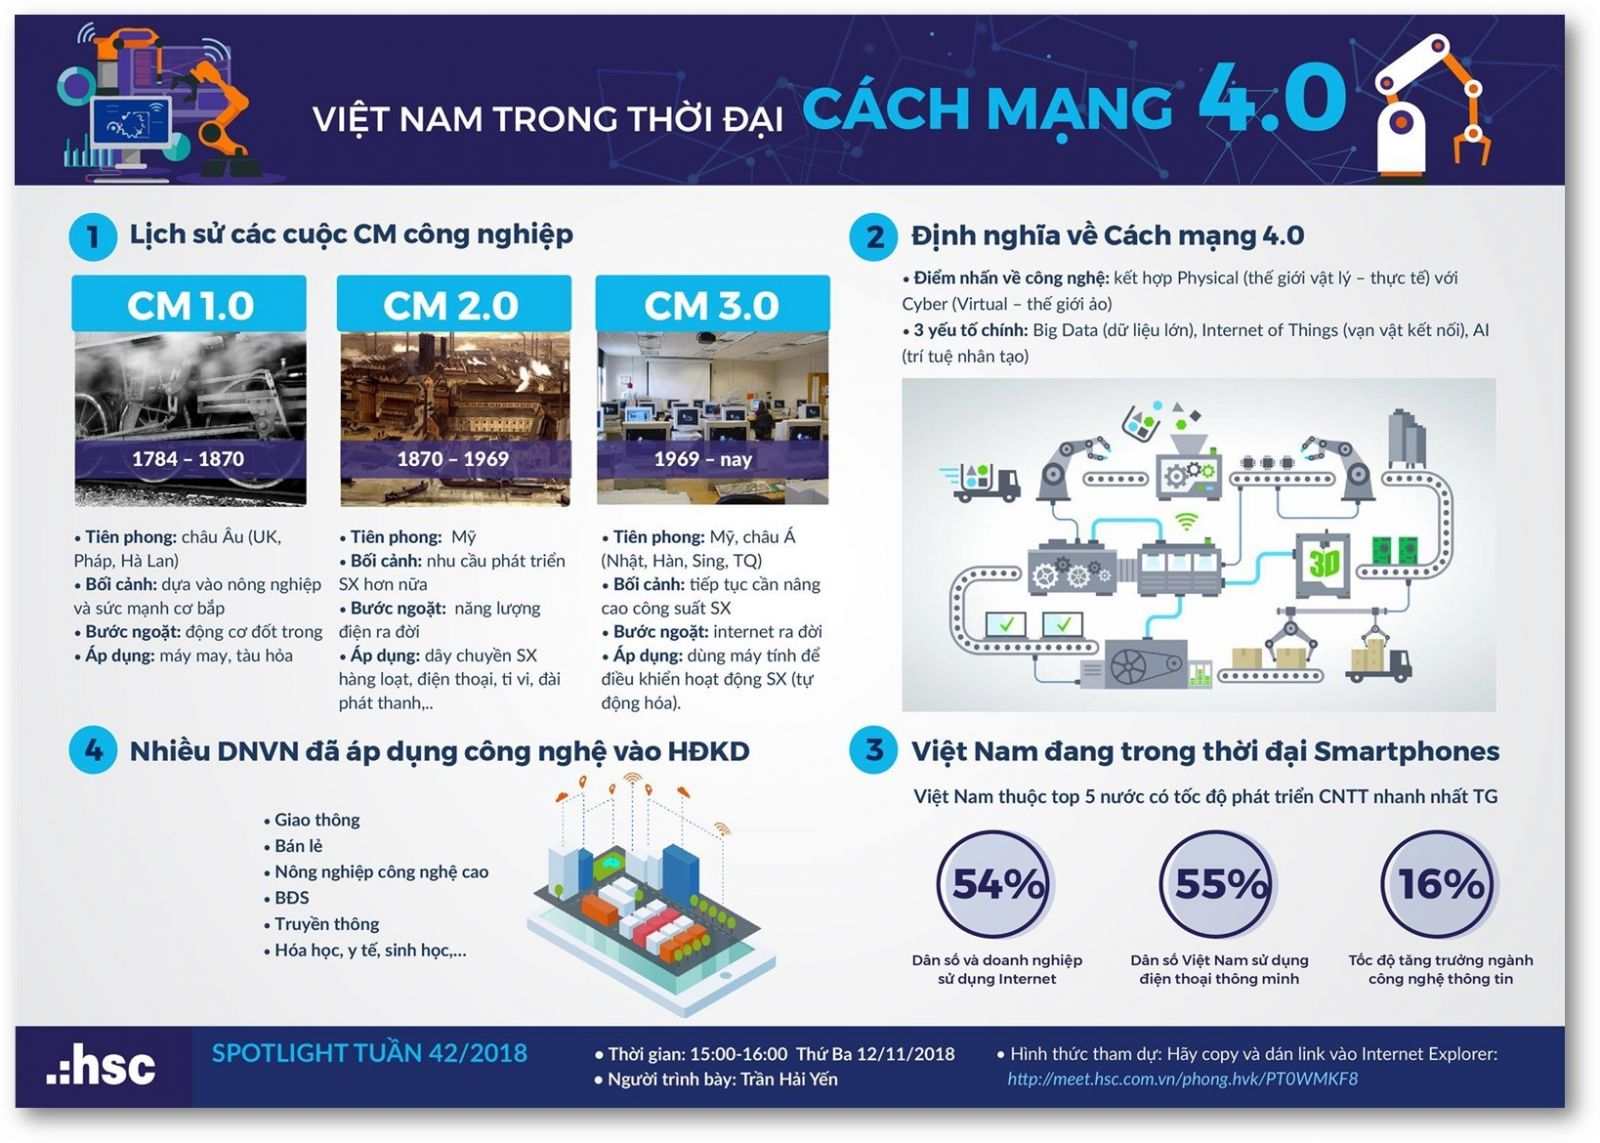 Việt Nam trong thời đại cách mạng công nghiệp 4.0